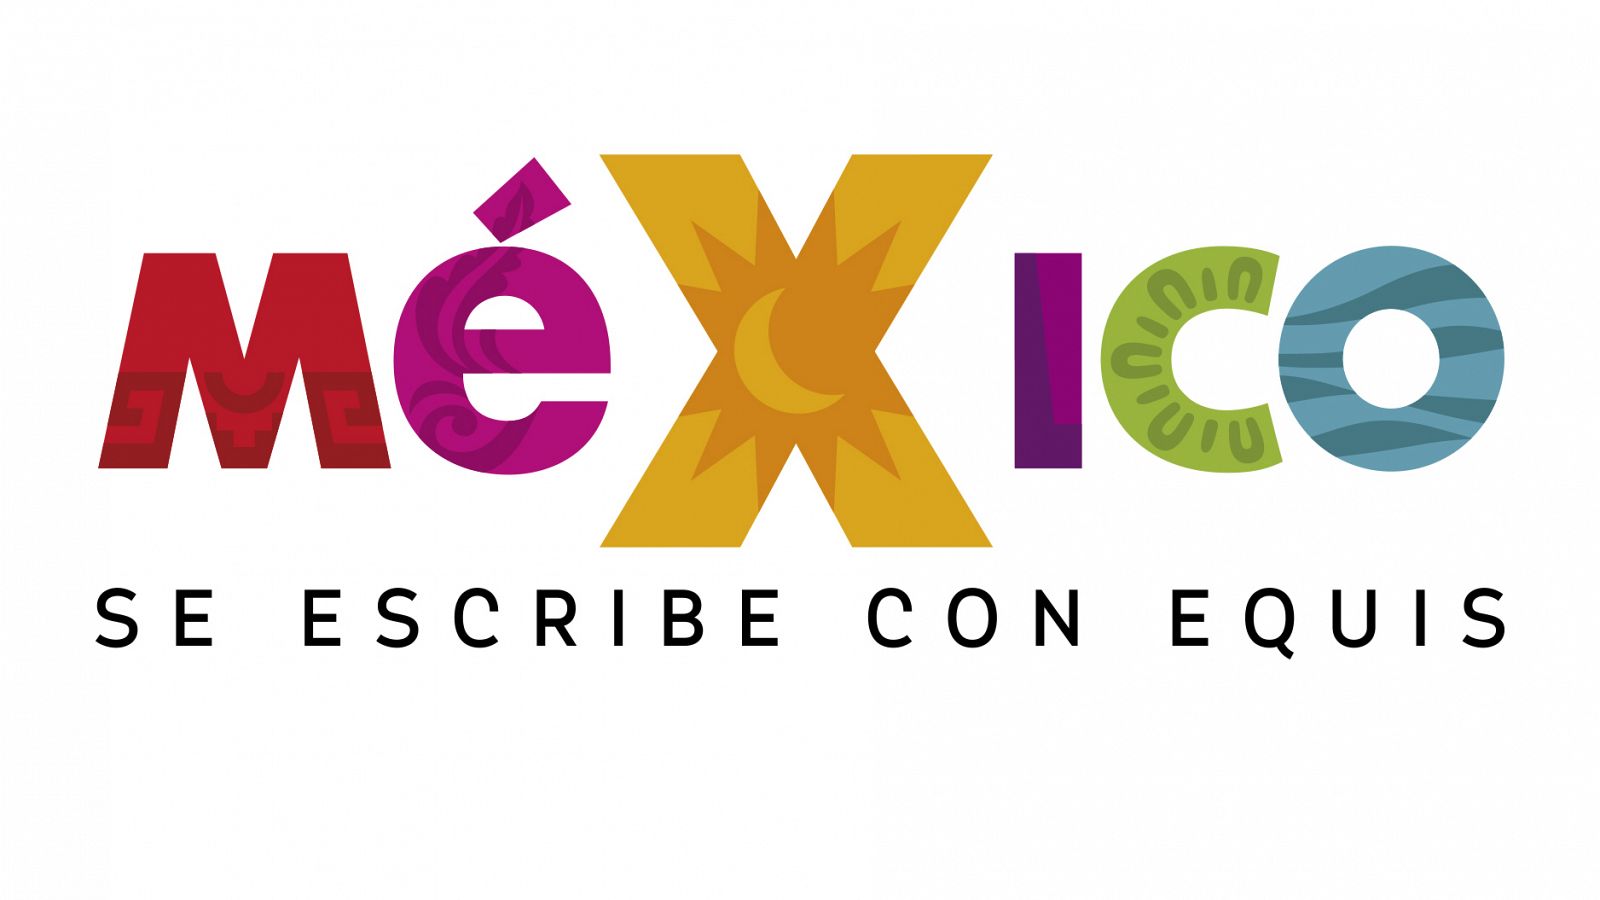 Festival México se escribe con equis